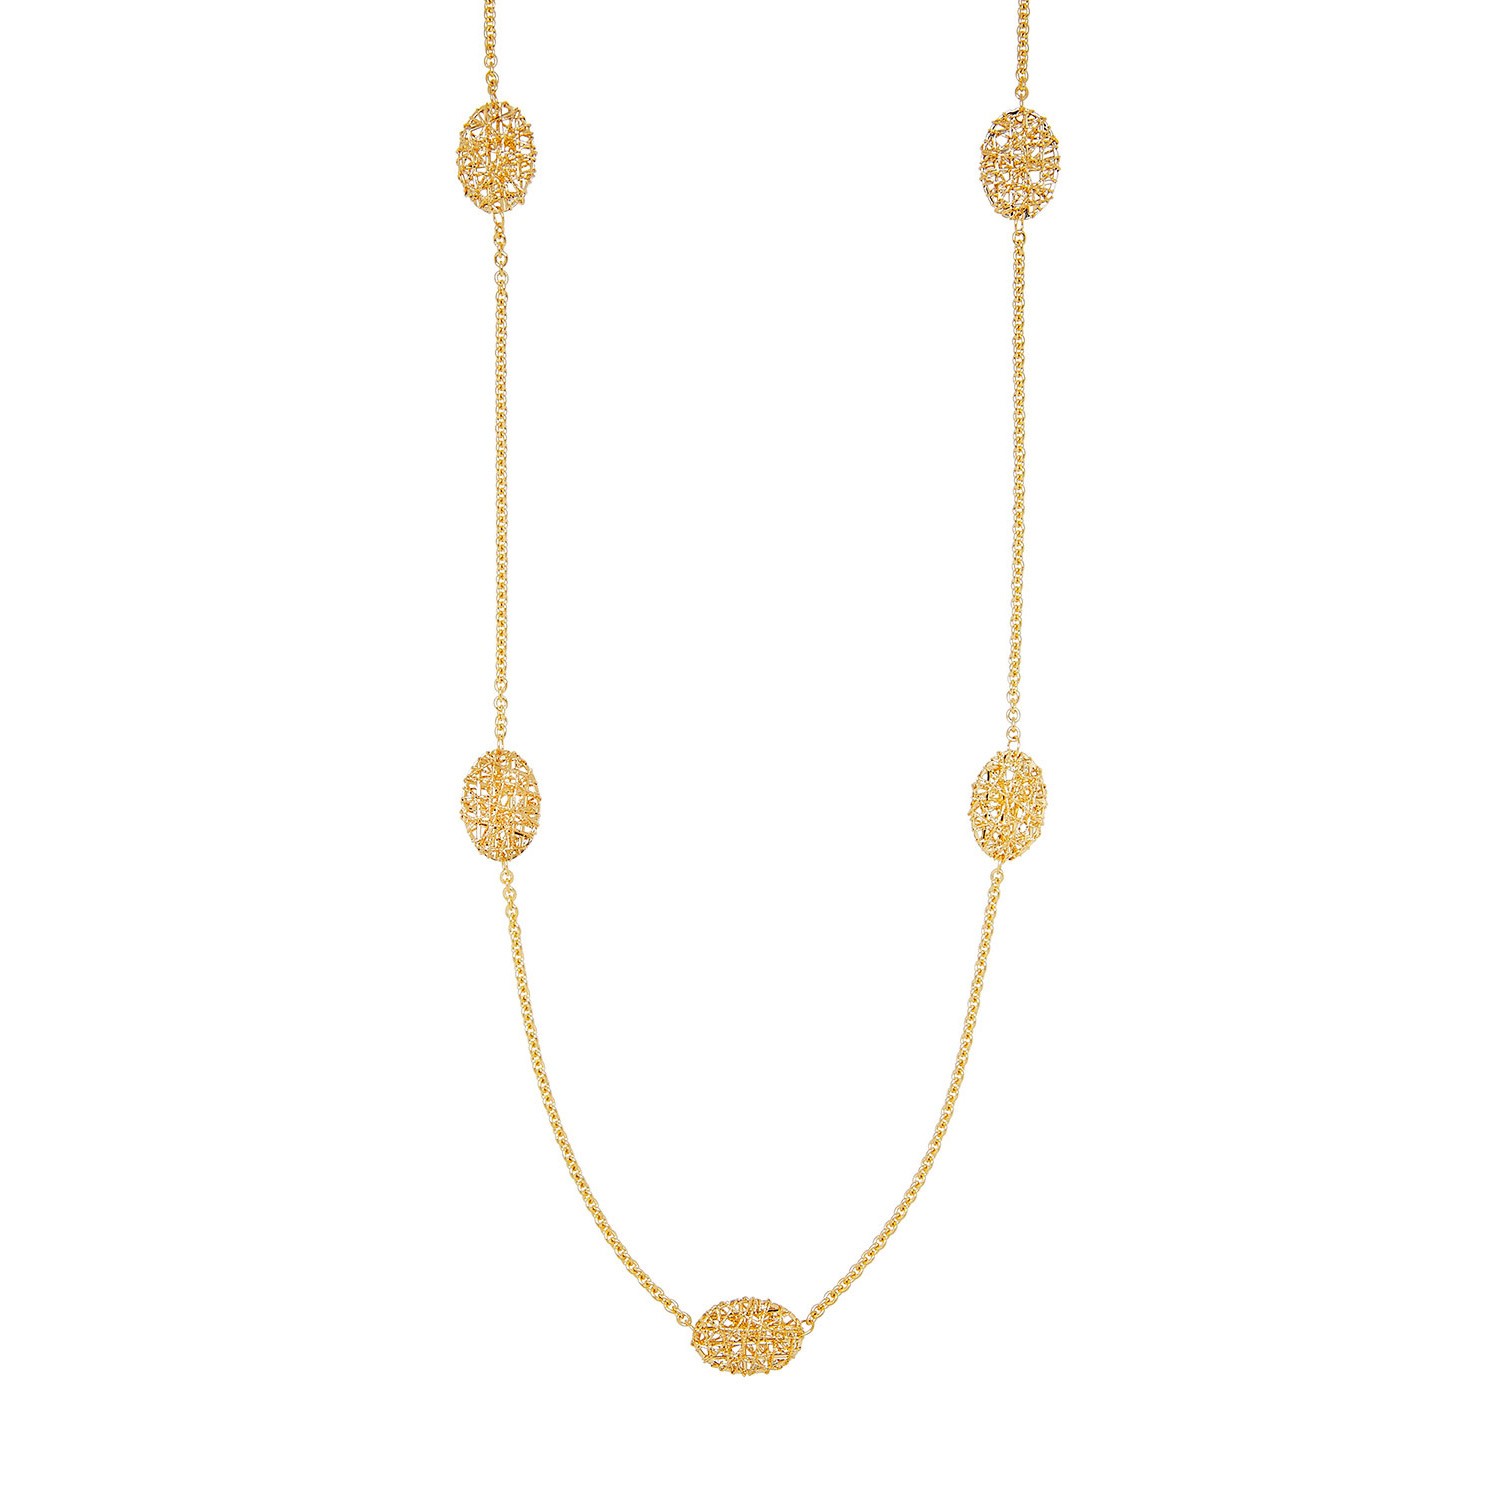 El collar al por mayor en oro 18K plateado crea servicio pendiente de la joyería para requisitos particulares de la joyería de OEM/ODM